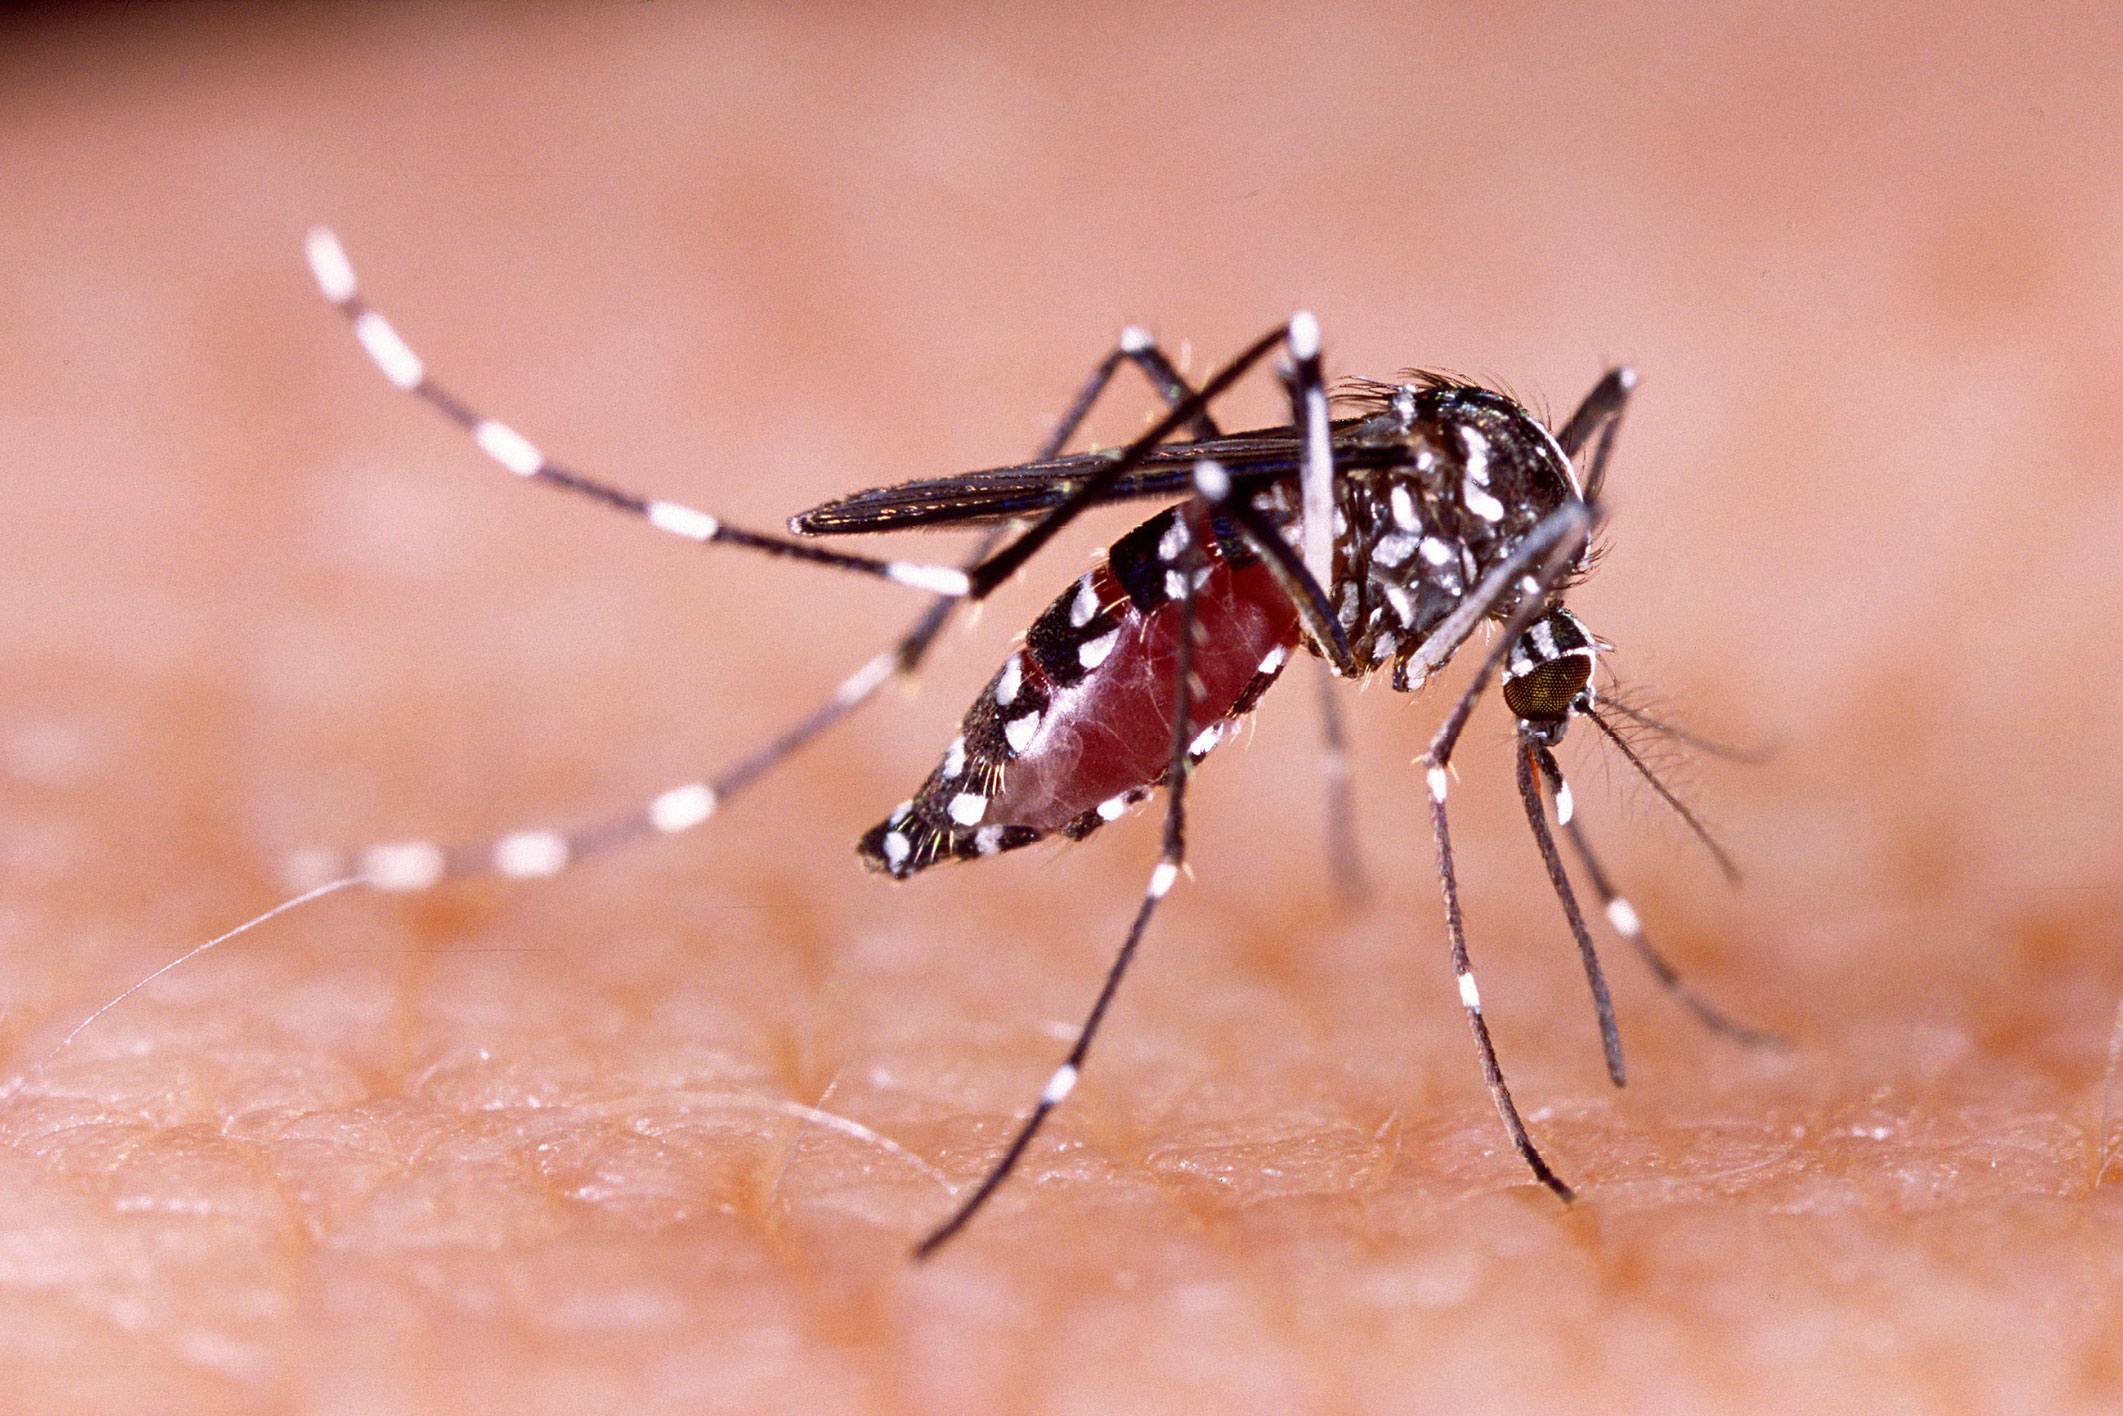 The tiger mosquito | Anses - Agence nationale de sécurité sanitaire de  l'alimentation, de l'environnement et du travail